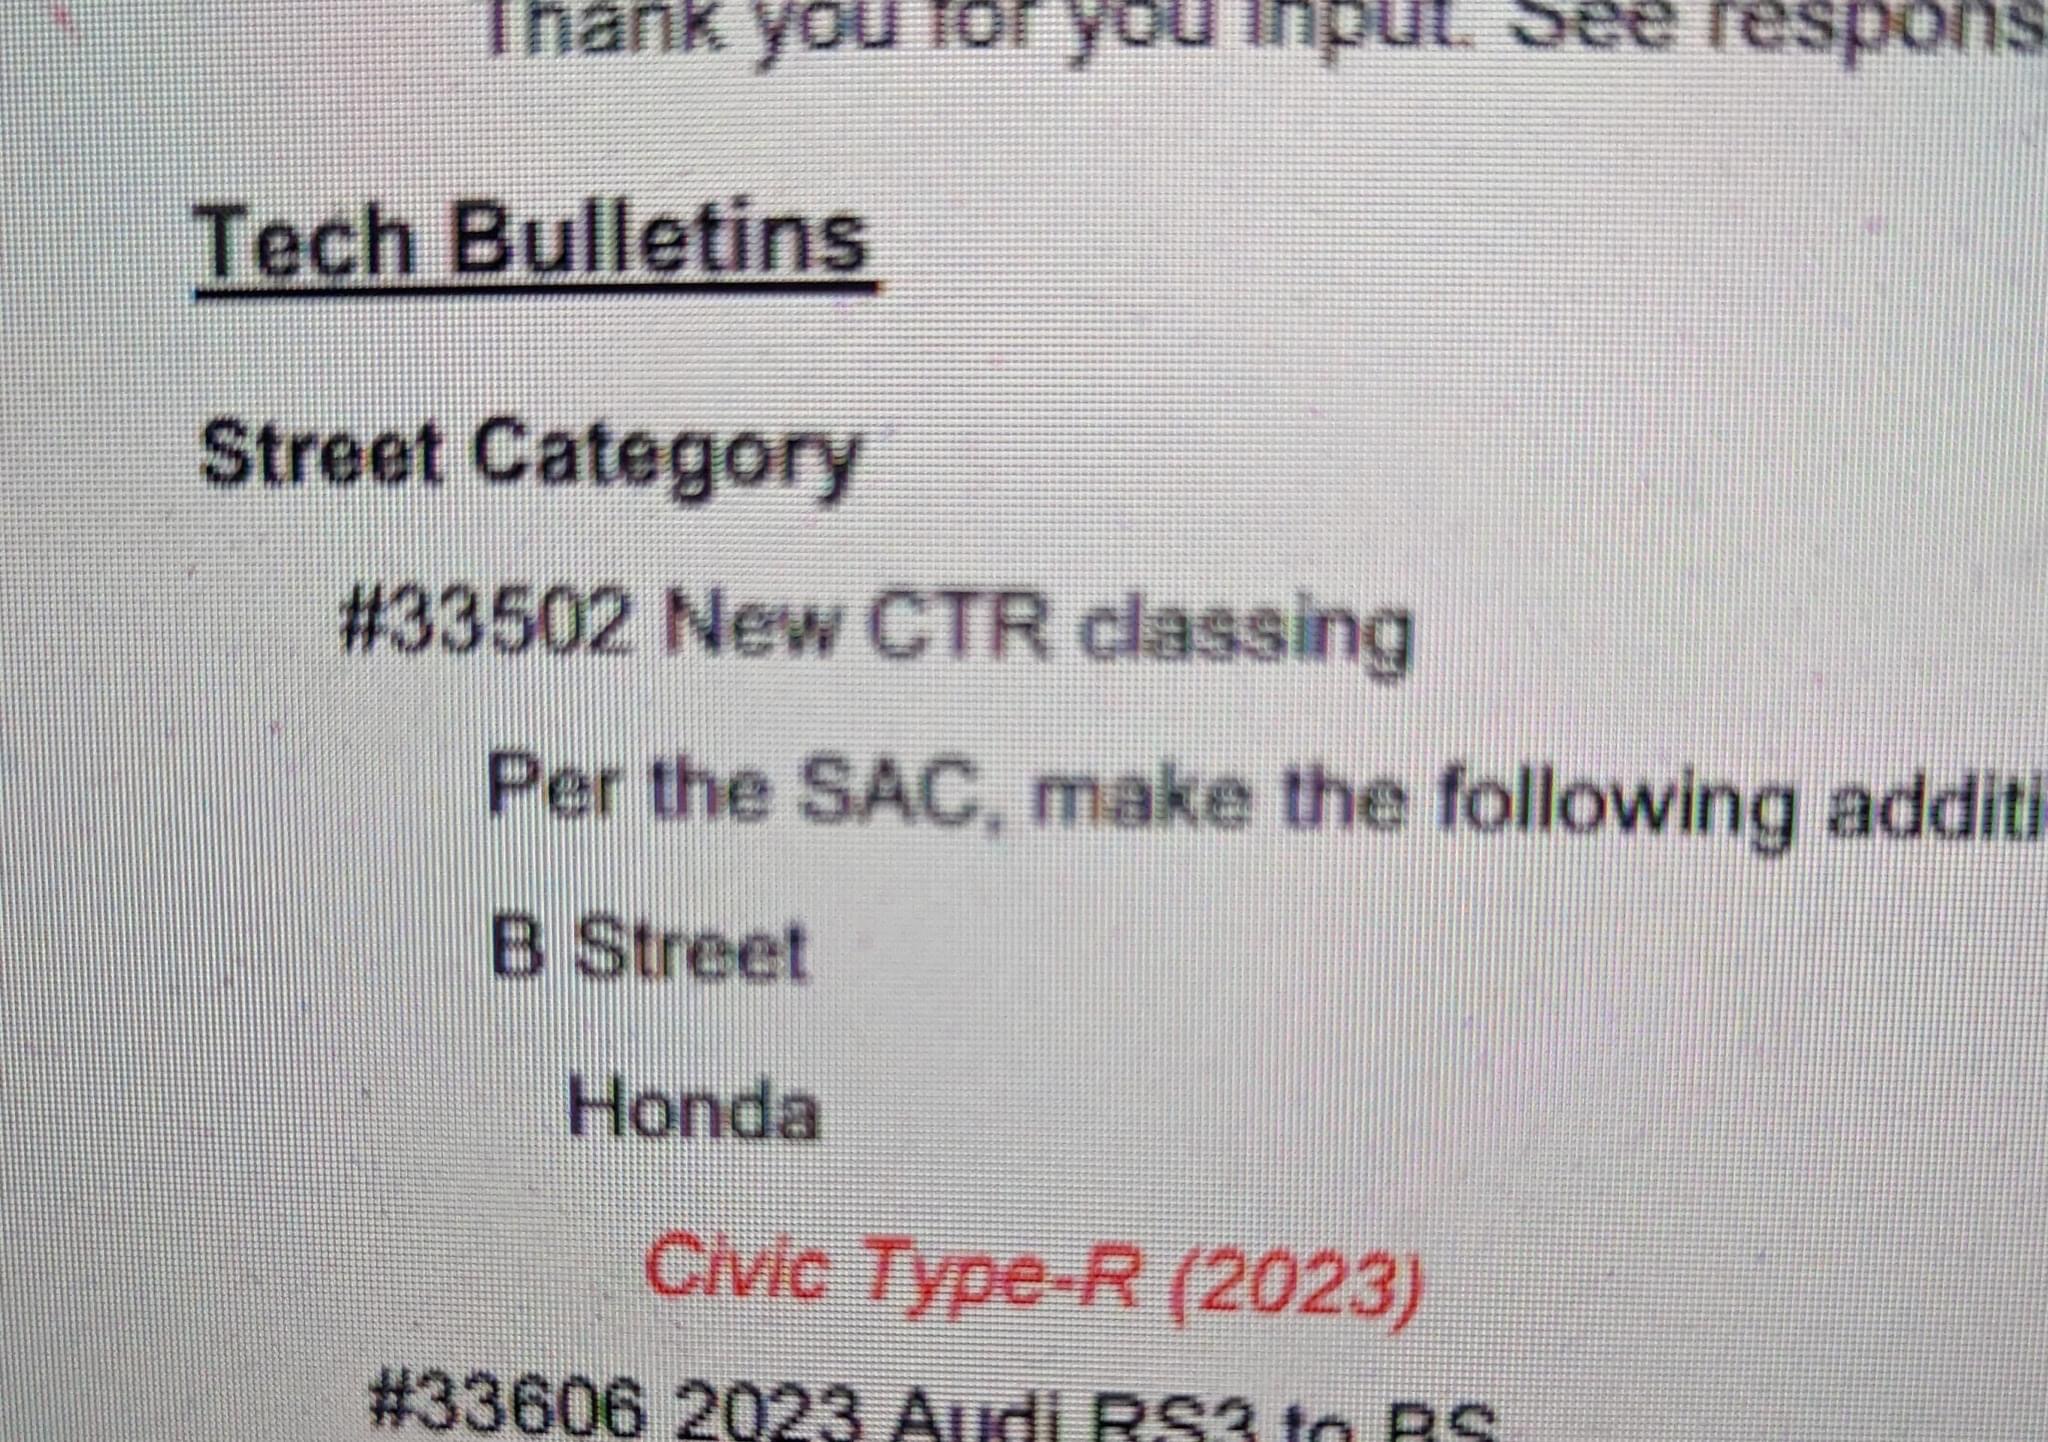 11th Gen Honda Civic FL5 (BS?) Autocross Thread 795D7100-3BE2-4847-BA36-E106F9DC6F3E